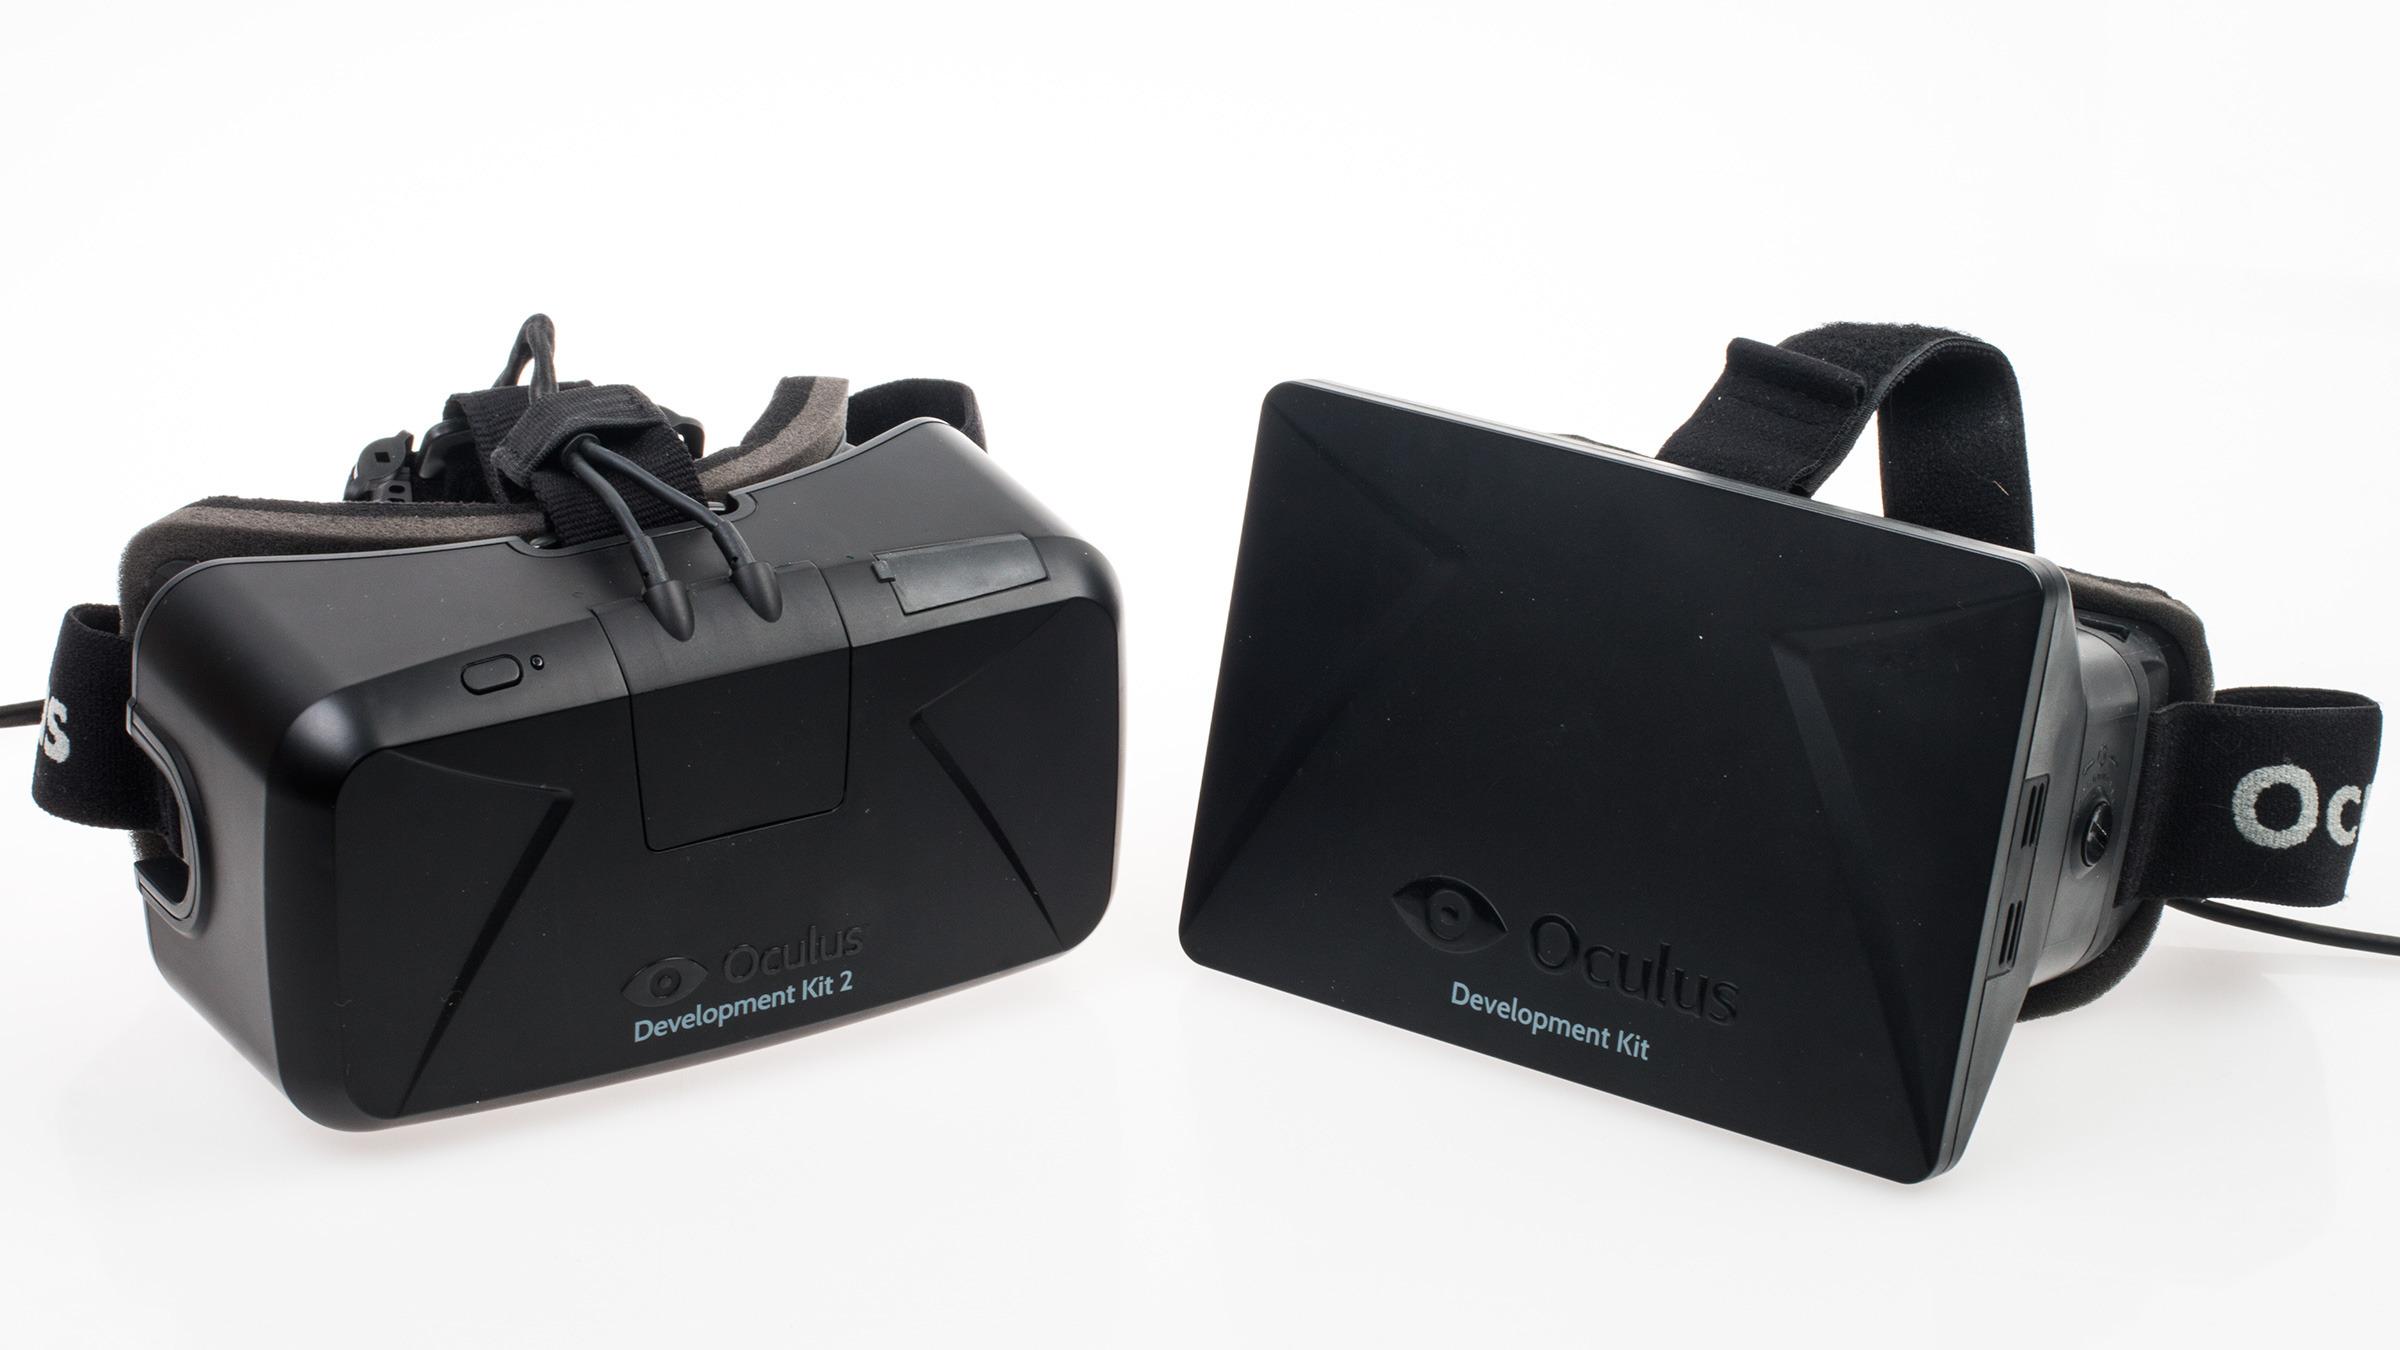 Selv om det bare er en utviklervariant er det tydelig at Oculus VR har tatt grep for å gjøre DK2 litt mer strømlinjeformet og lekker på utsiden.Foto: Varg Aamo, Tek.no